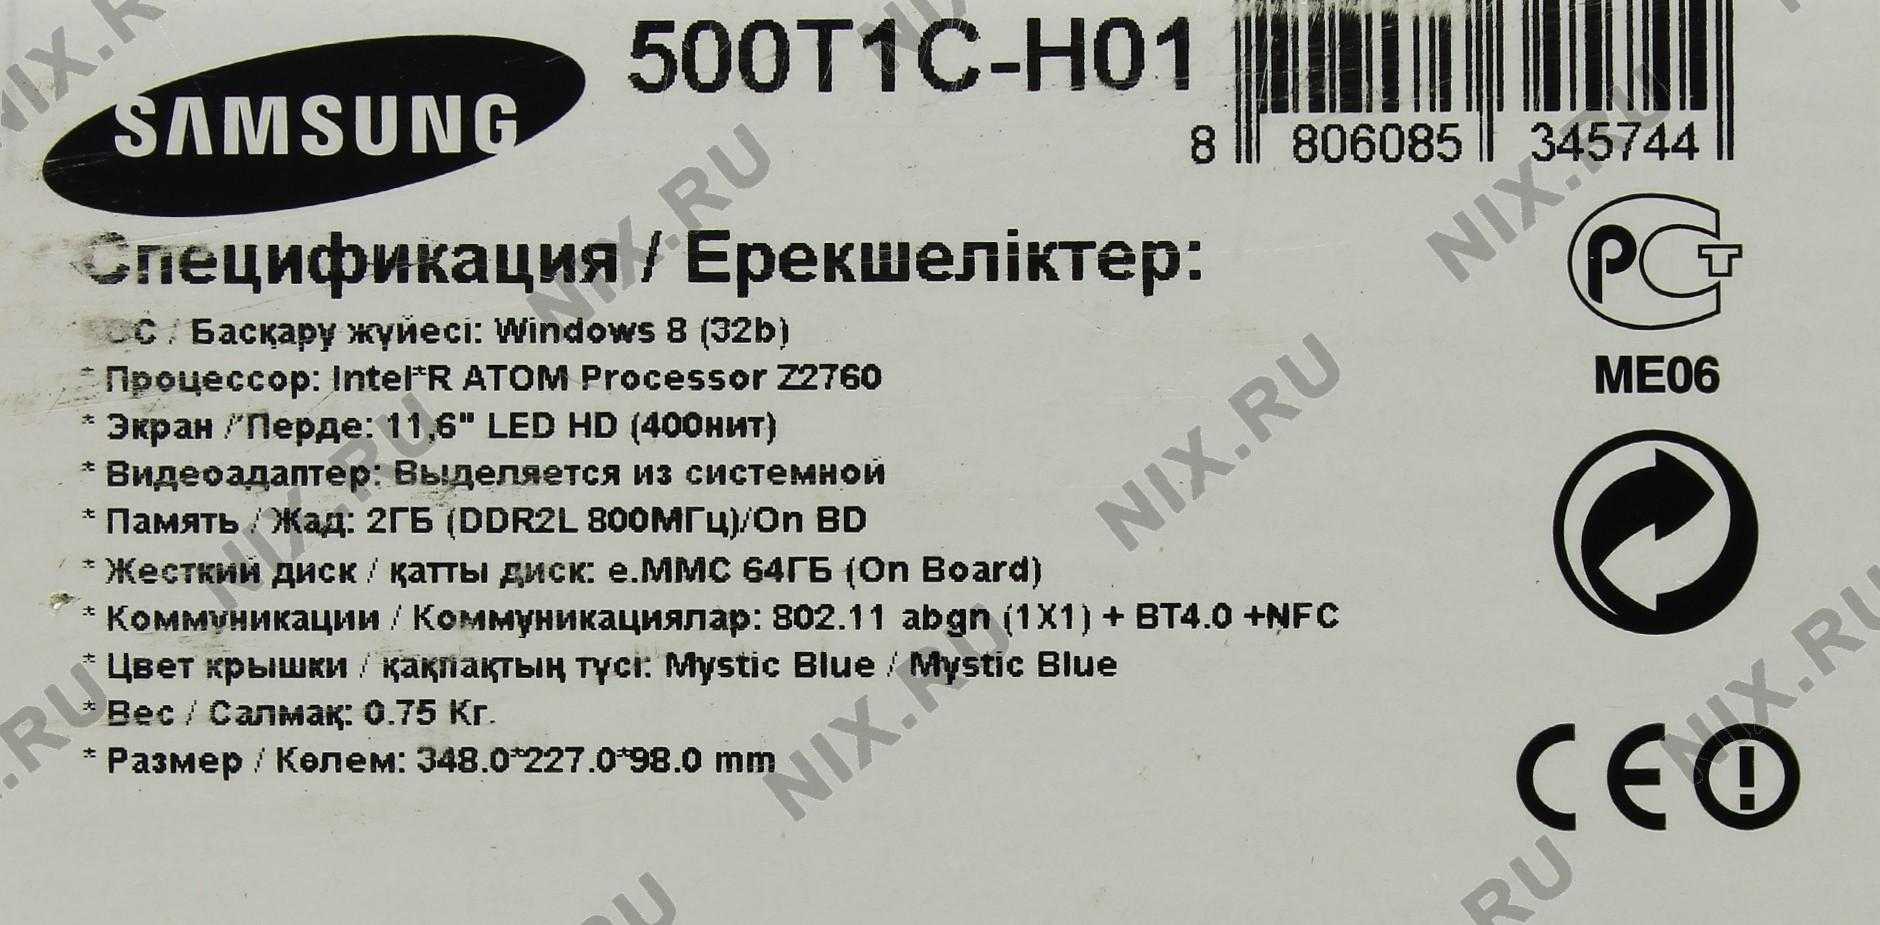 Samsung ativ smart pc xe500t1c-a03 64gb купить по акционной цене , отзывы и обзоры.